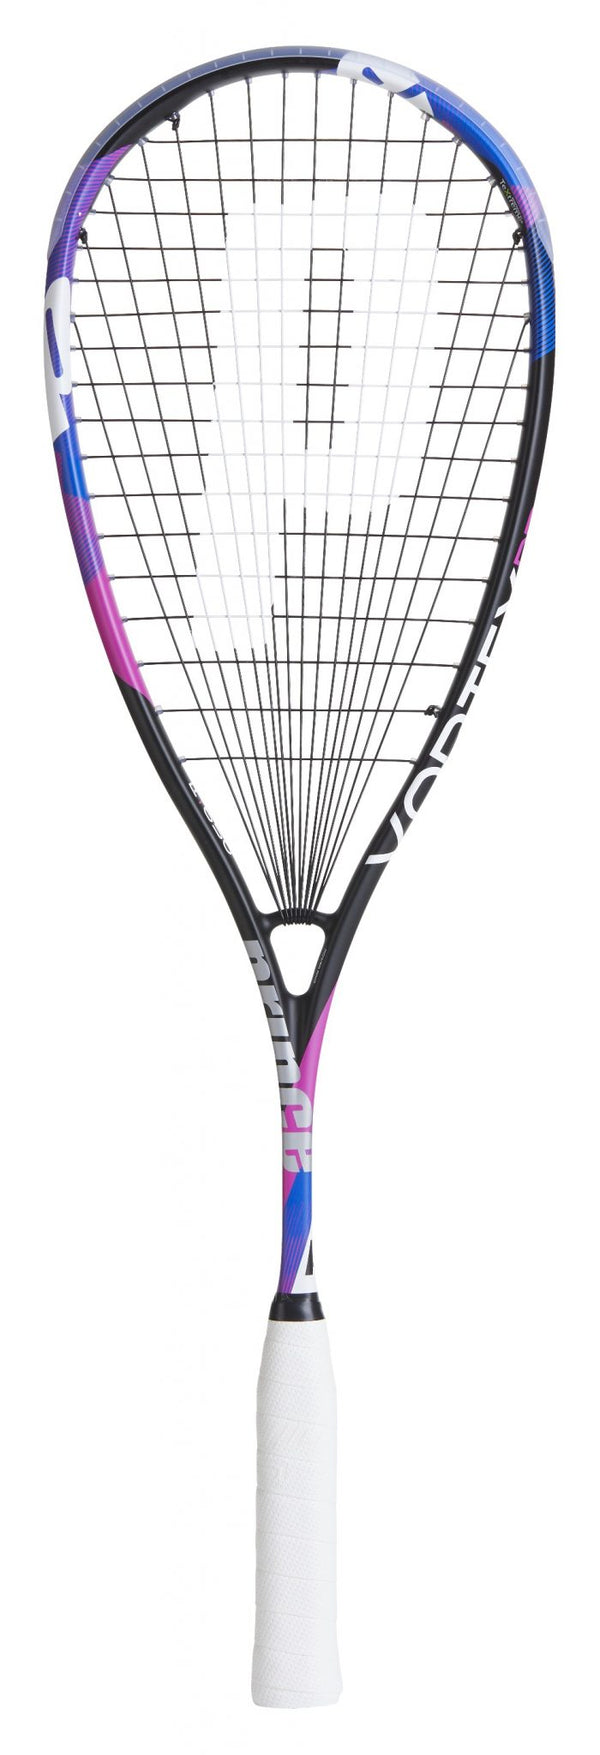 PRINCE Vortex Pro 650 - neuer Look für Ramy's Racket